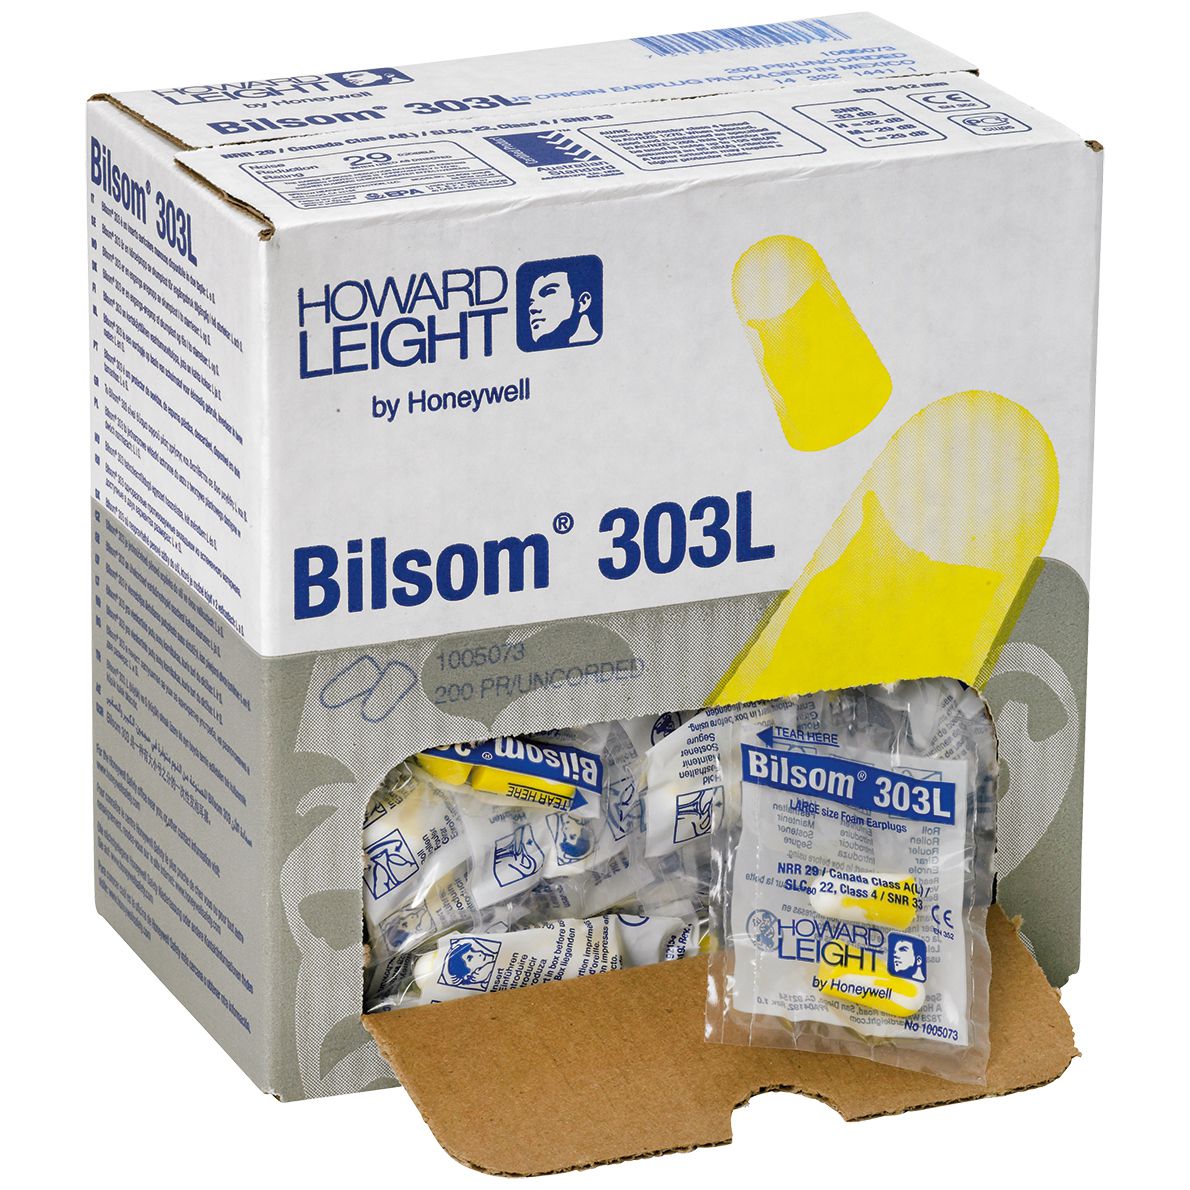 Howard Leight Bilsom 303L Ohrstöpsel - Gehörschutzstöpsel ohne Kordel - Box mit 200 Paar in PE-Tüten